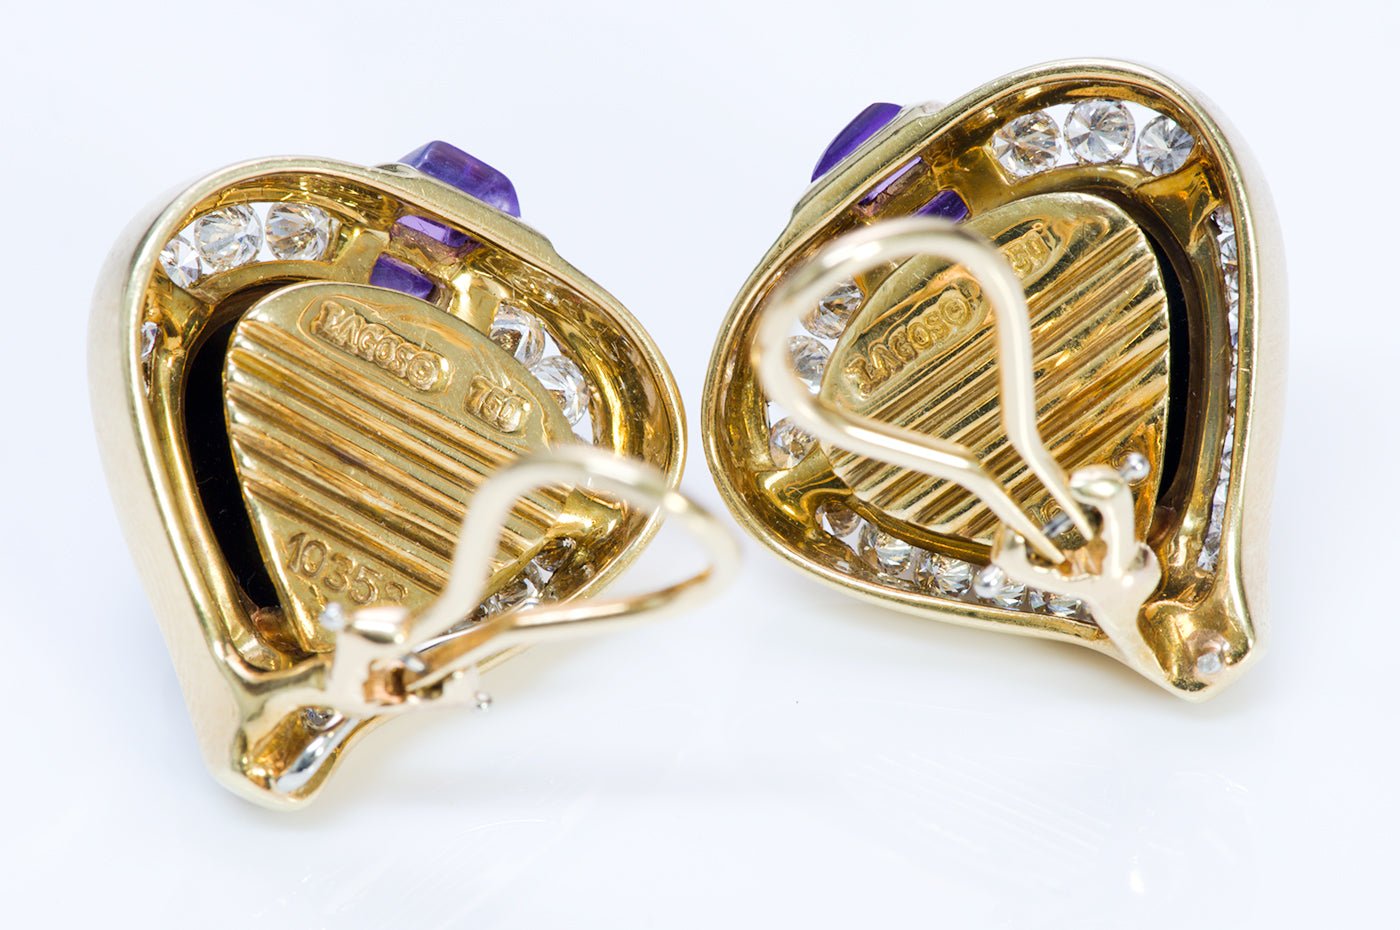 Steven Lagos 18K Gold Onyx Amethyst Diamond Earrings